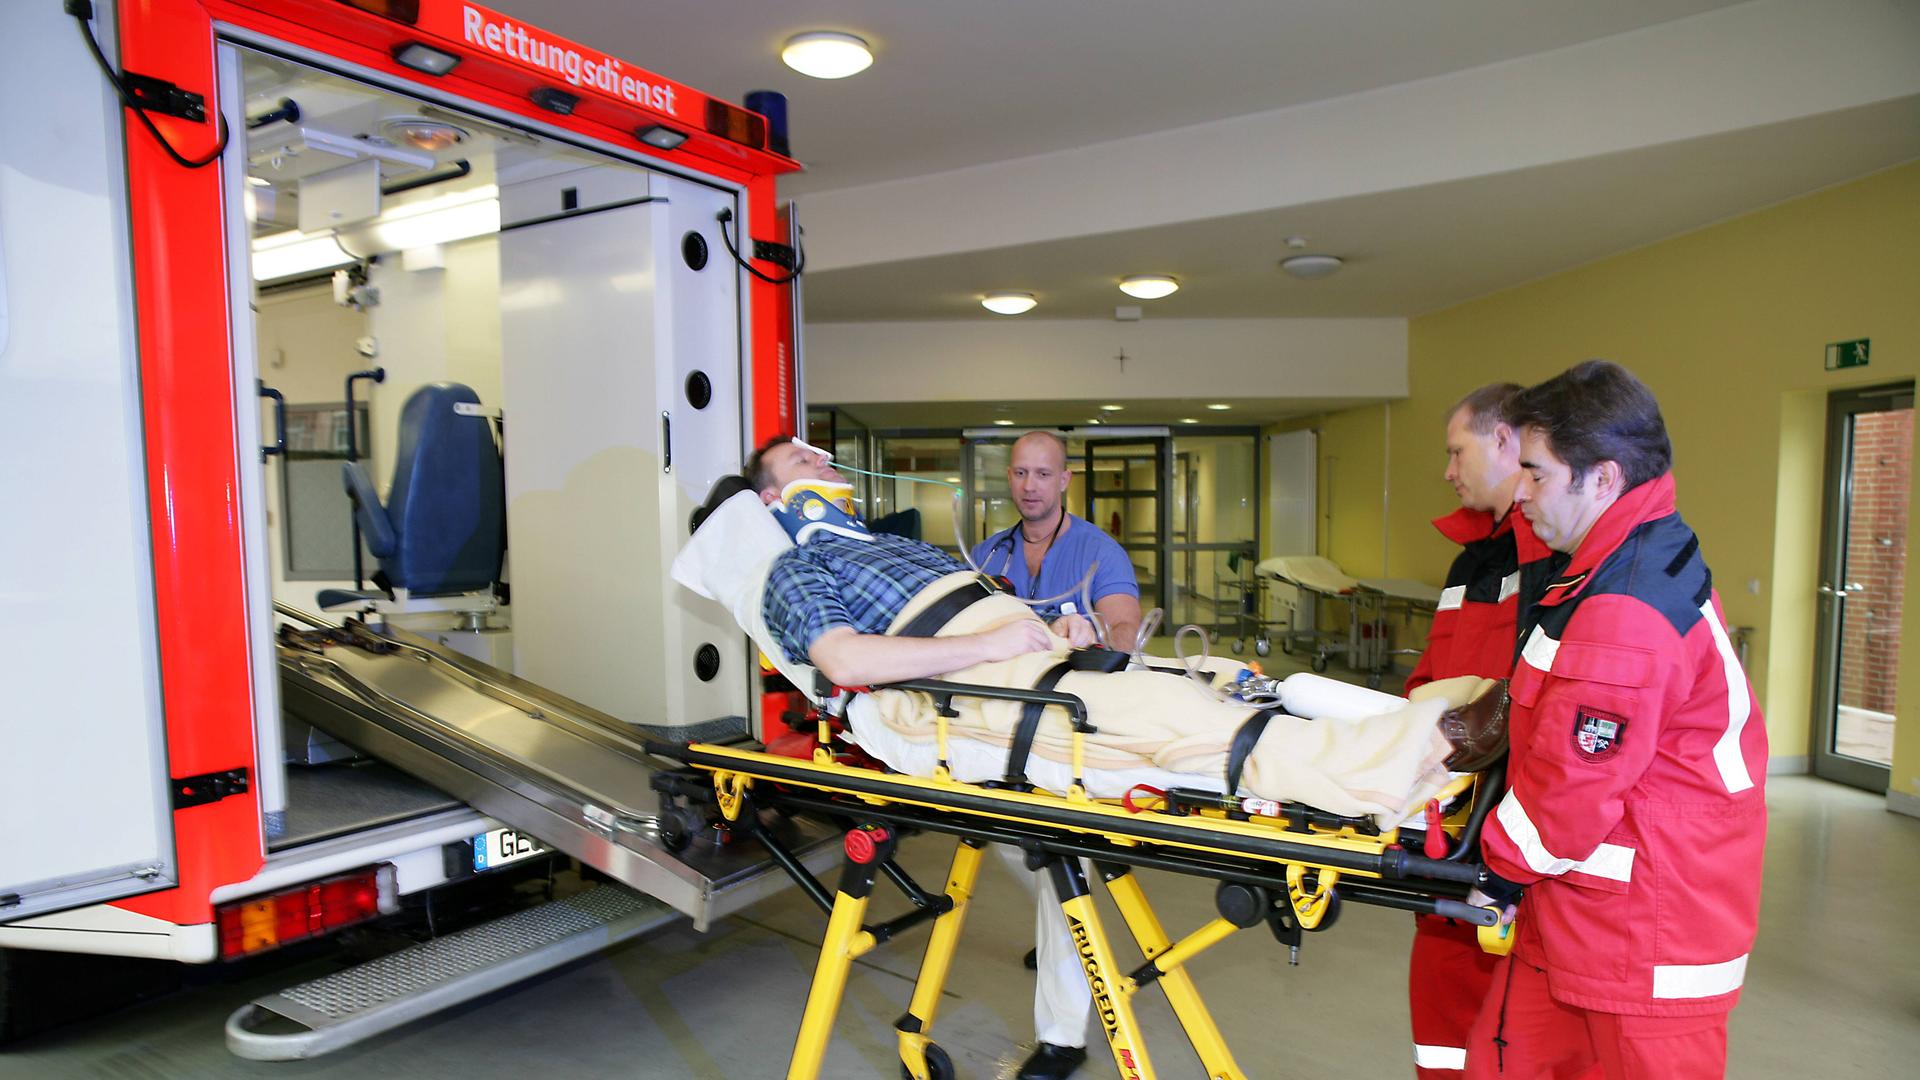 Ein Patient wird aus einem Rettungswagen auf einer Bahre von zwei Männern in roten Overalls in die Notaufnahme eines Krankenhauses gefahren.